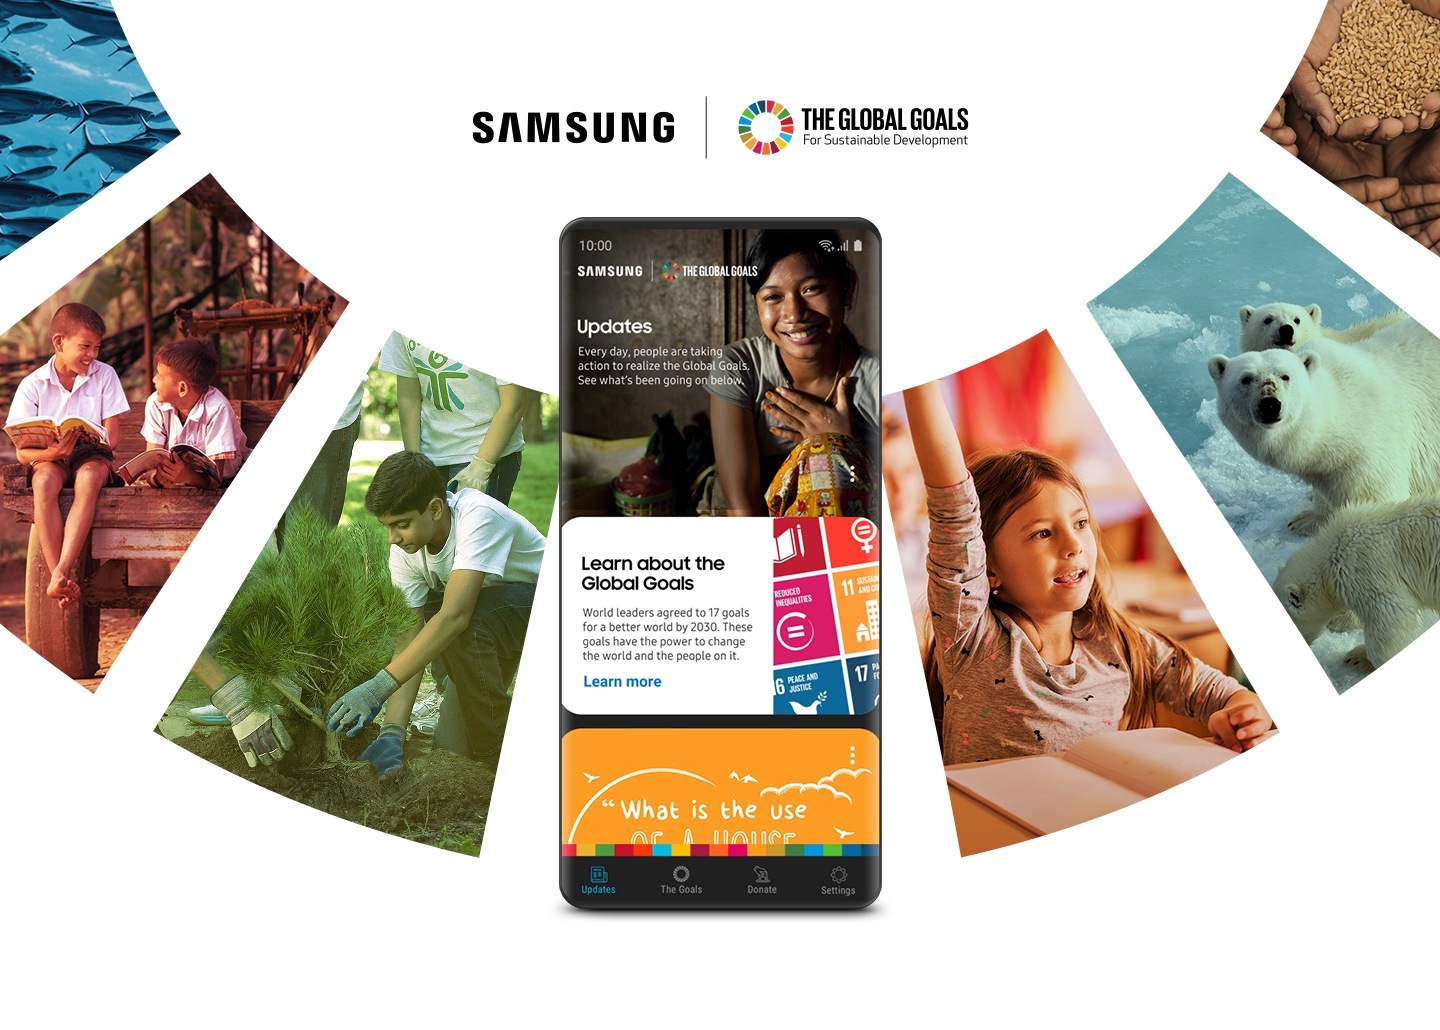 Смартфон Galaxy с имитируемым интерфейсом приложения Samsung Global Goals находится перед кольцом коллажированных изображений, отражающих Цели ООН в области устойчивого развития. Samsung сотрудничает с Организацией Объединенных Наций, чтобы дать пользователям возможность сделать более светлое будущее для всех.